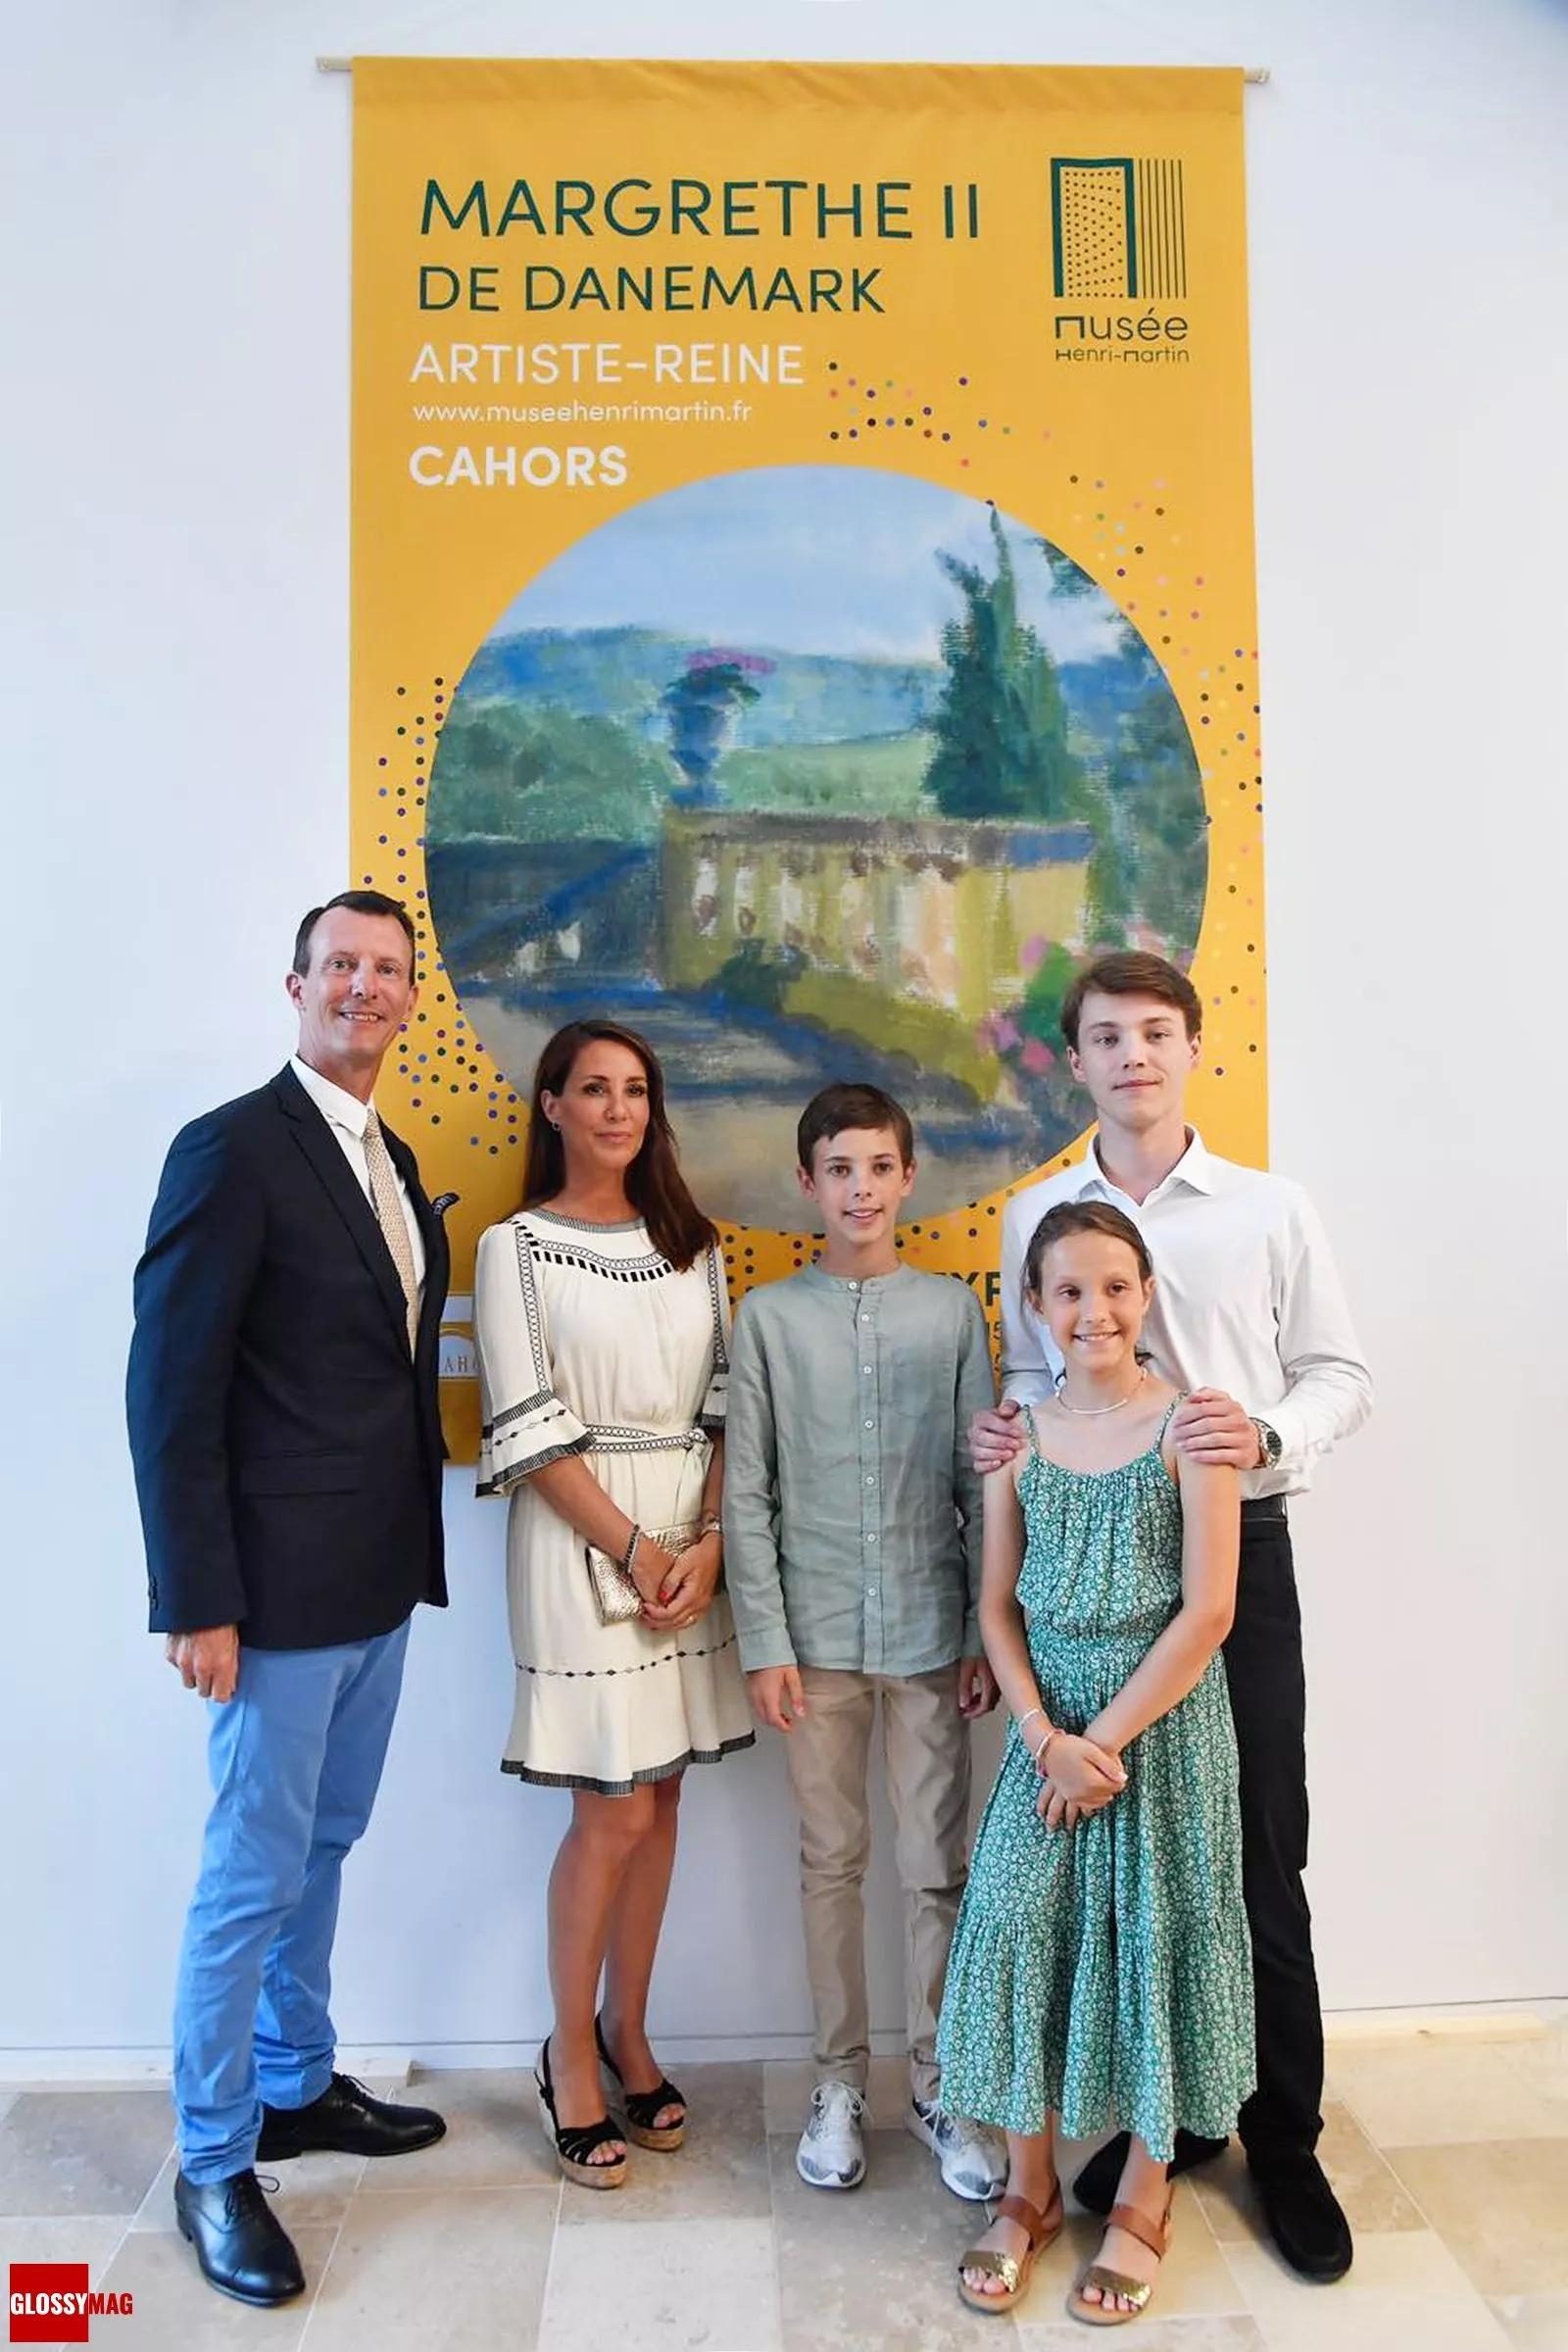 Принц Иоахим с женой, принцессой Мари, и детьми на выставке «Margrethe II of Denmark, Artiste-Reine» в музее Анри-Мартена, 15 июля 2022 г.